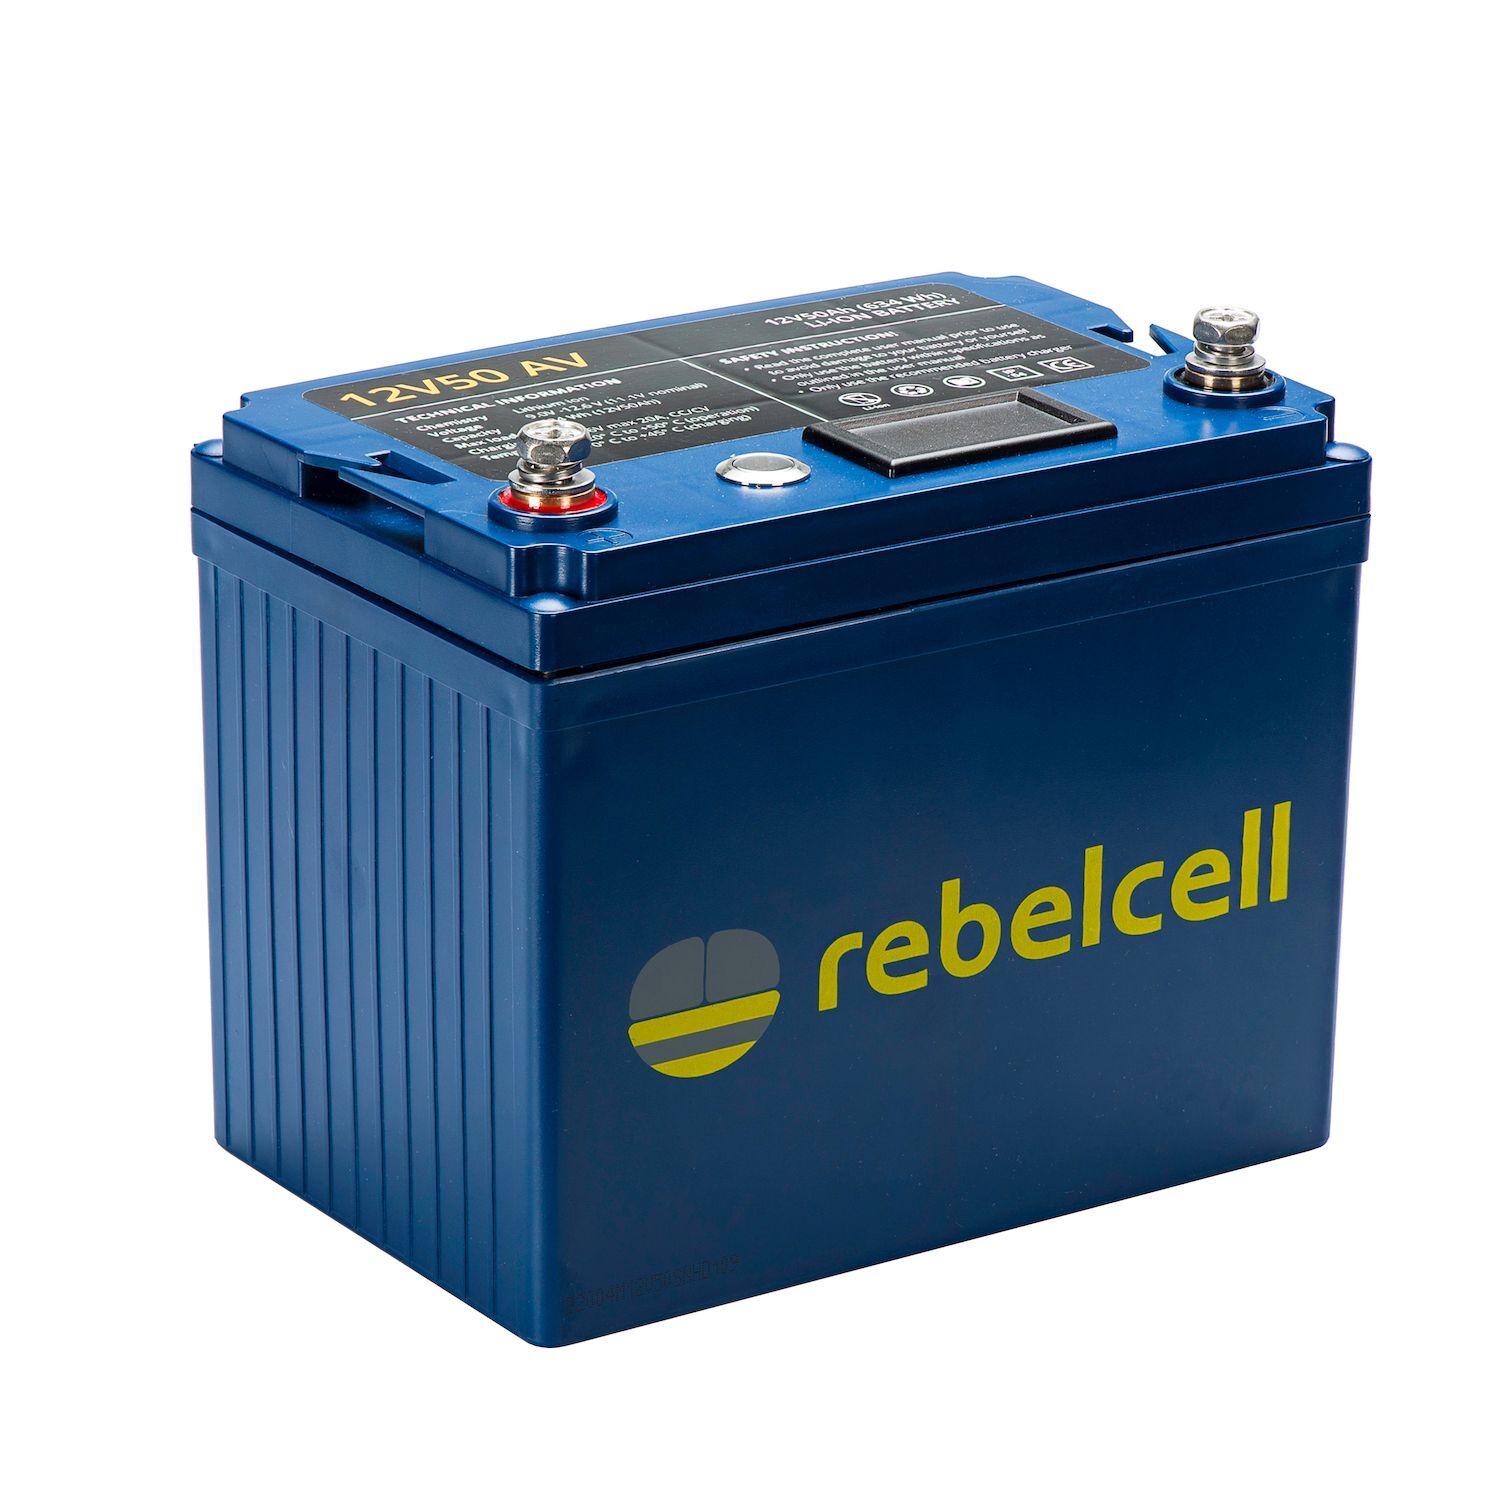 Rebelcell Li-Ion 12V/50A akku jännite/varausnäytöllä